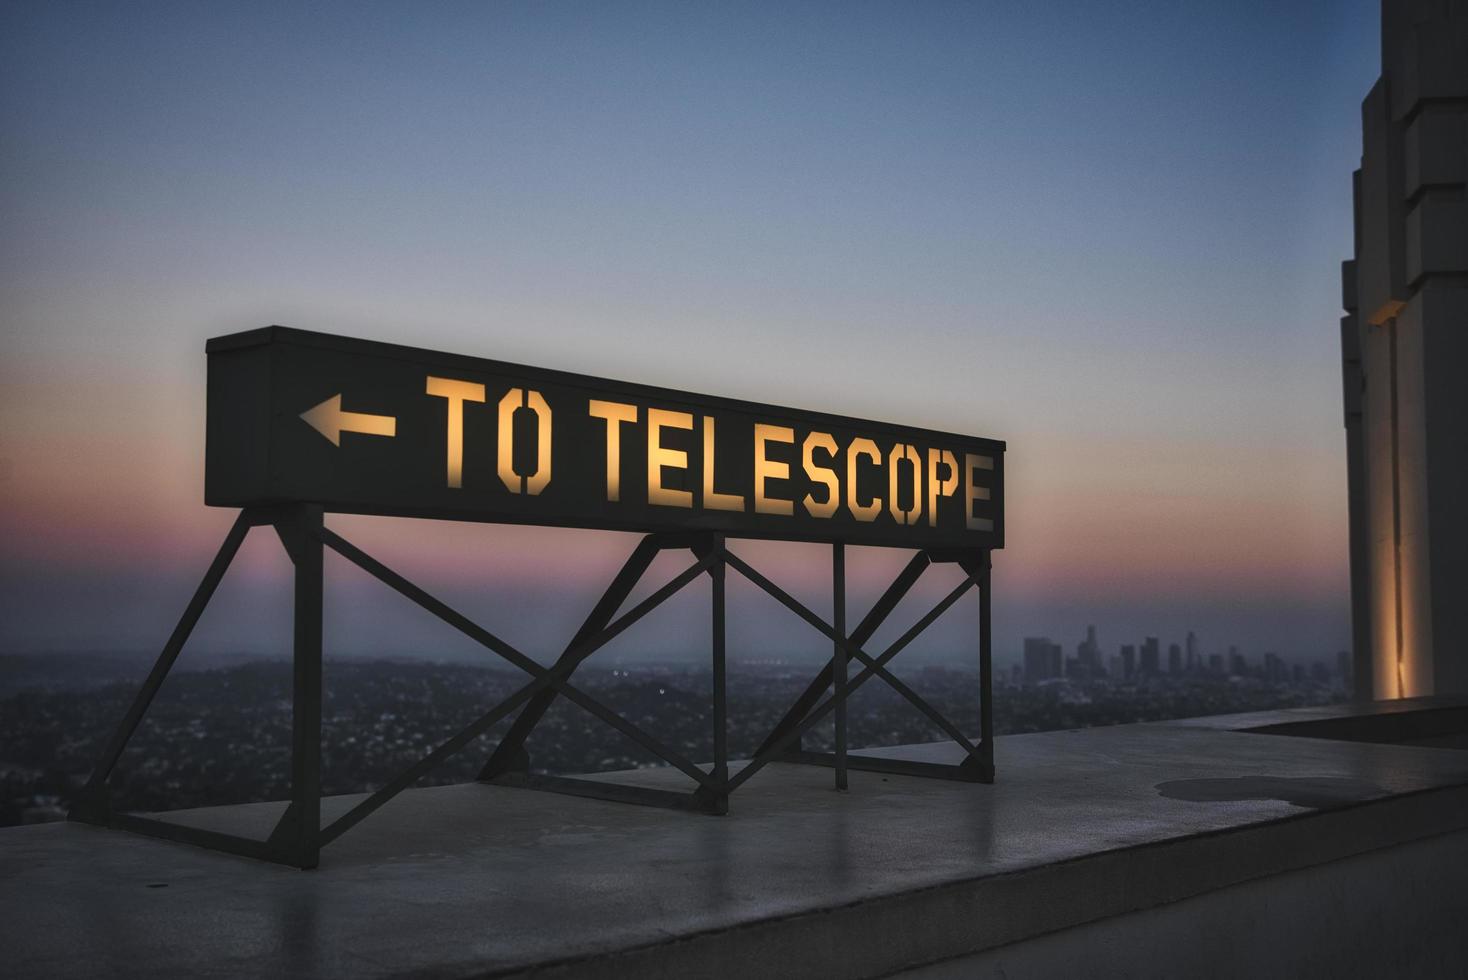 zur Teleskopbeschilderung foto